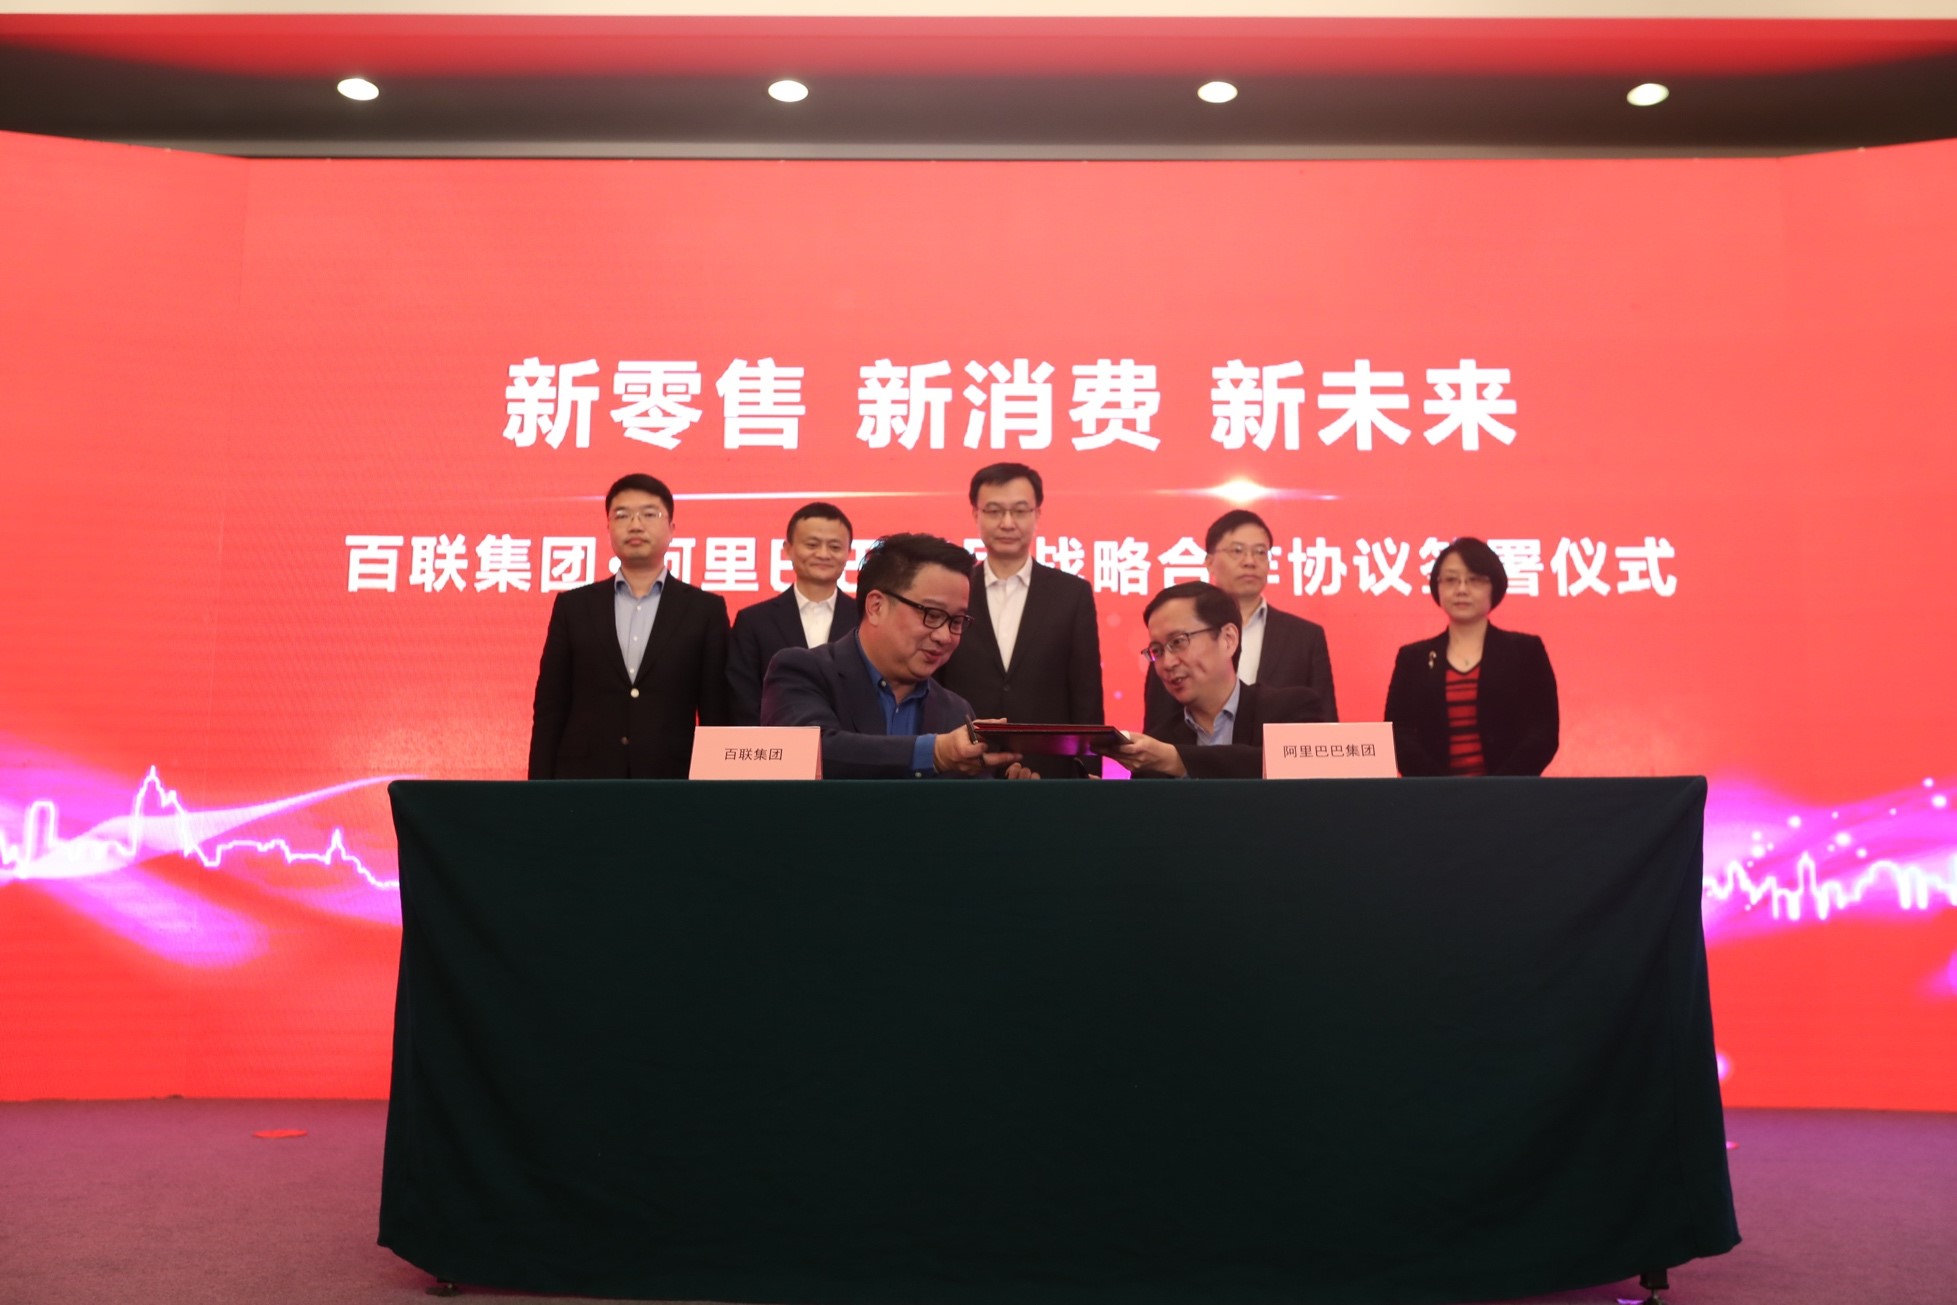 阿里巴巴牽手百聯集團，為中國商業打開新零售、新消費、新未來，雙方在六個領域全面展開戰略合作。